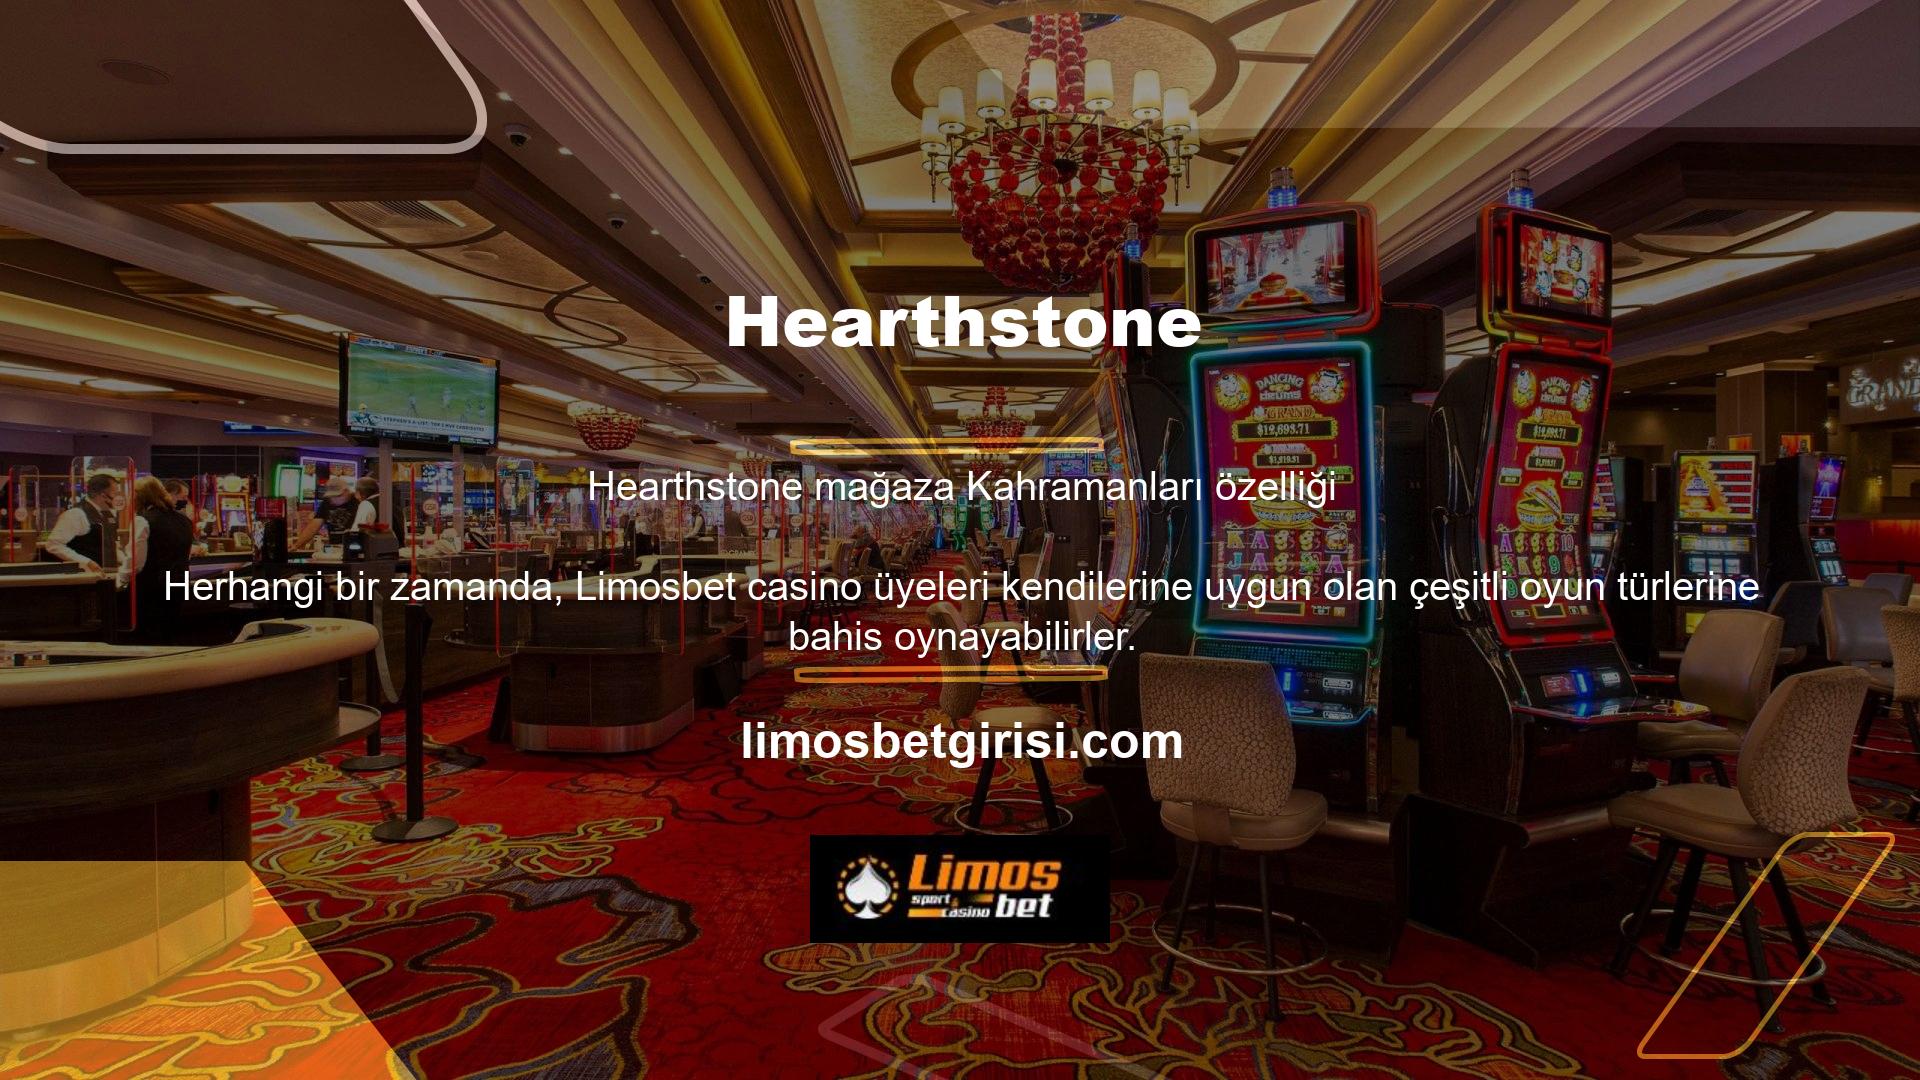 HearthstoneLimosbet Casinolarda Oyun Tamamen Parayla İlgilidirHearthstoneLimosbet ve Casino kategorilerine yönelik kampanyalarımız, oyun ve bahis oynamayı kolaylaştırarak kullanıcı etkileşimini artırmayı amaçlamaktadır